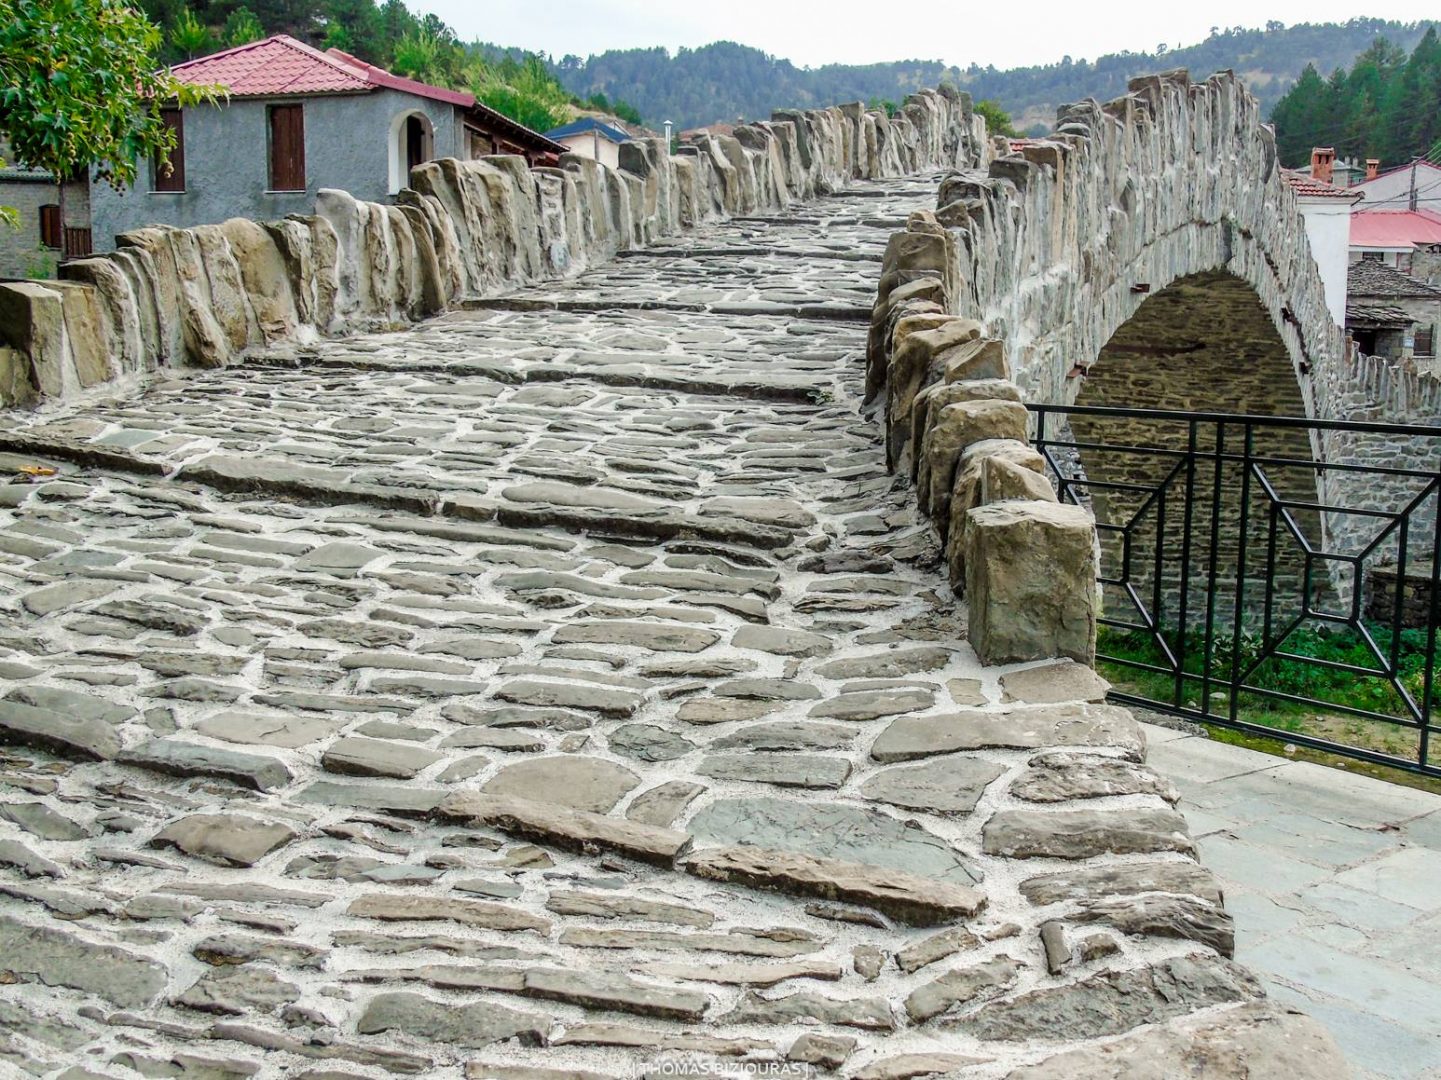 ΔΟΤΣΙΚΟ ΓΡΕΒΕΝΩΝ - Πρόκειται για ένα πέτρινο παραδοσιακό χωριό με  ένα πανέμορφο μονότοξο πετρόκτιστο γεφύρι 1